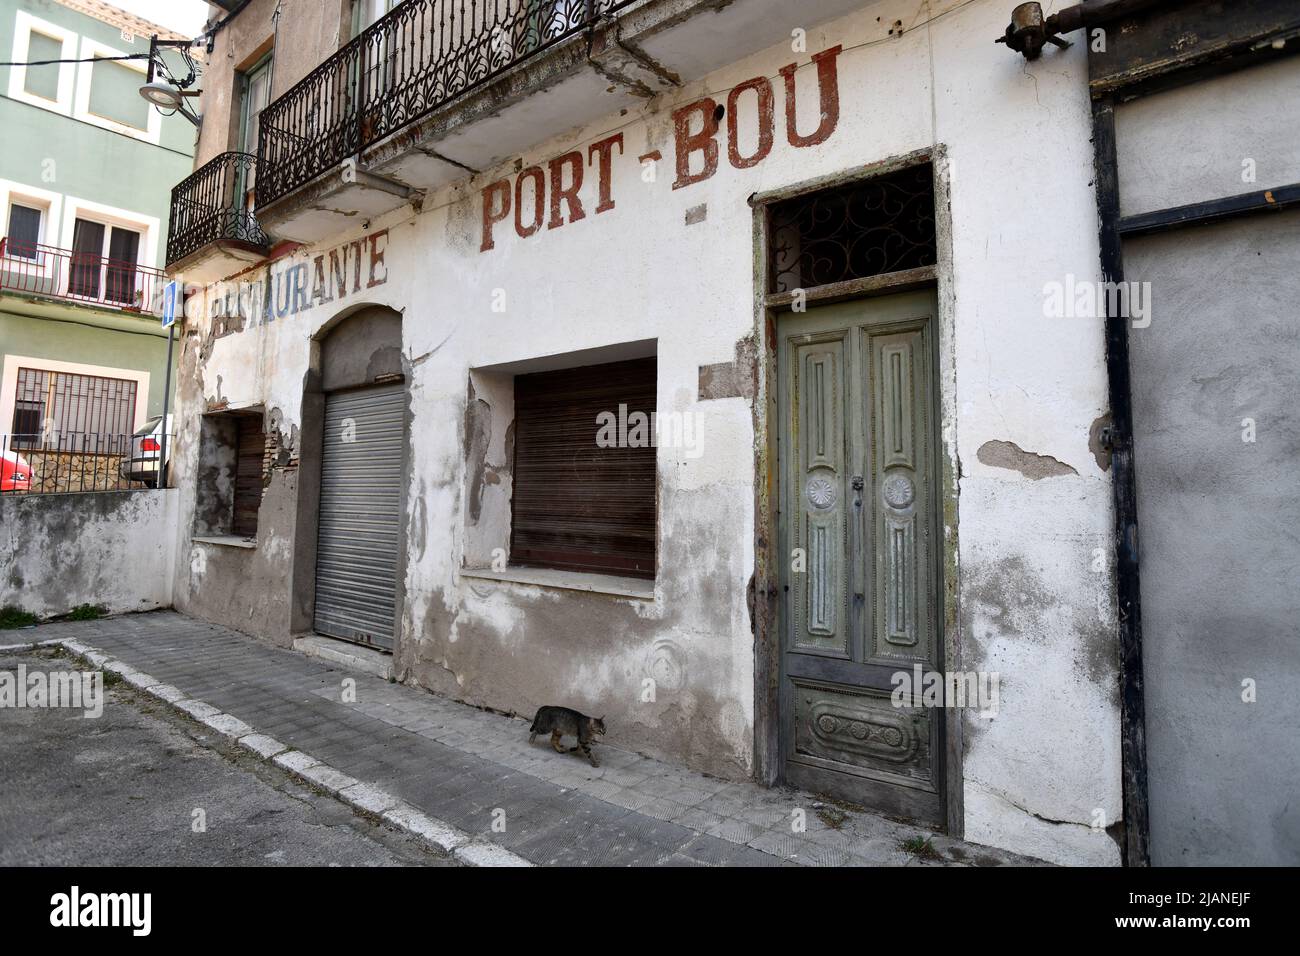 Le village espagnol de Portbou, frontière catalane, qui borde la France et l'Espagne avec des bâtiments négligés Banque D'Images